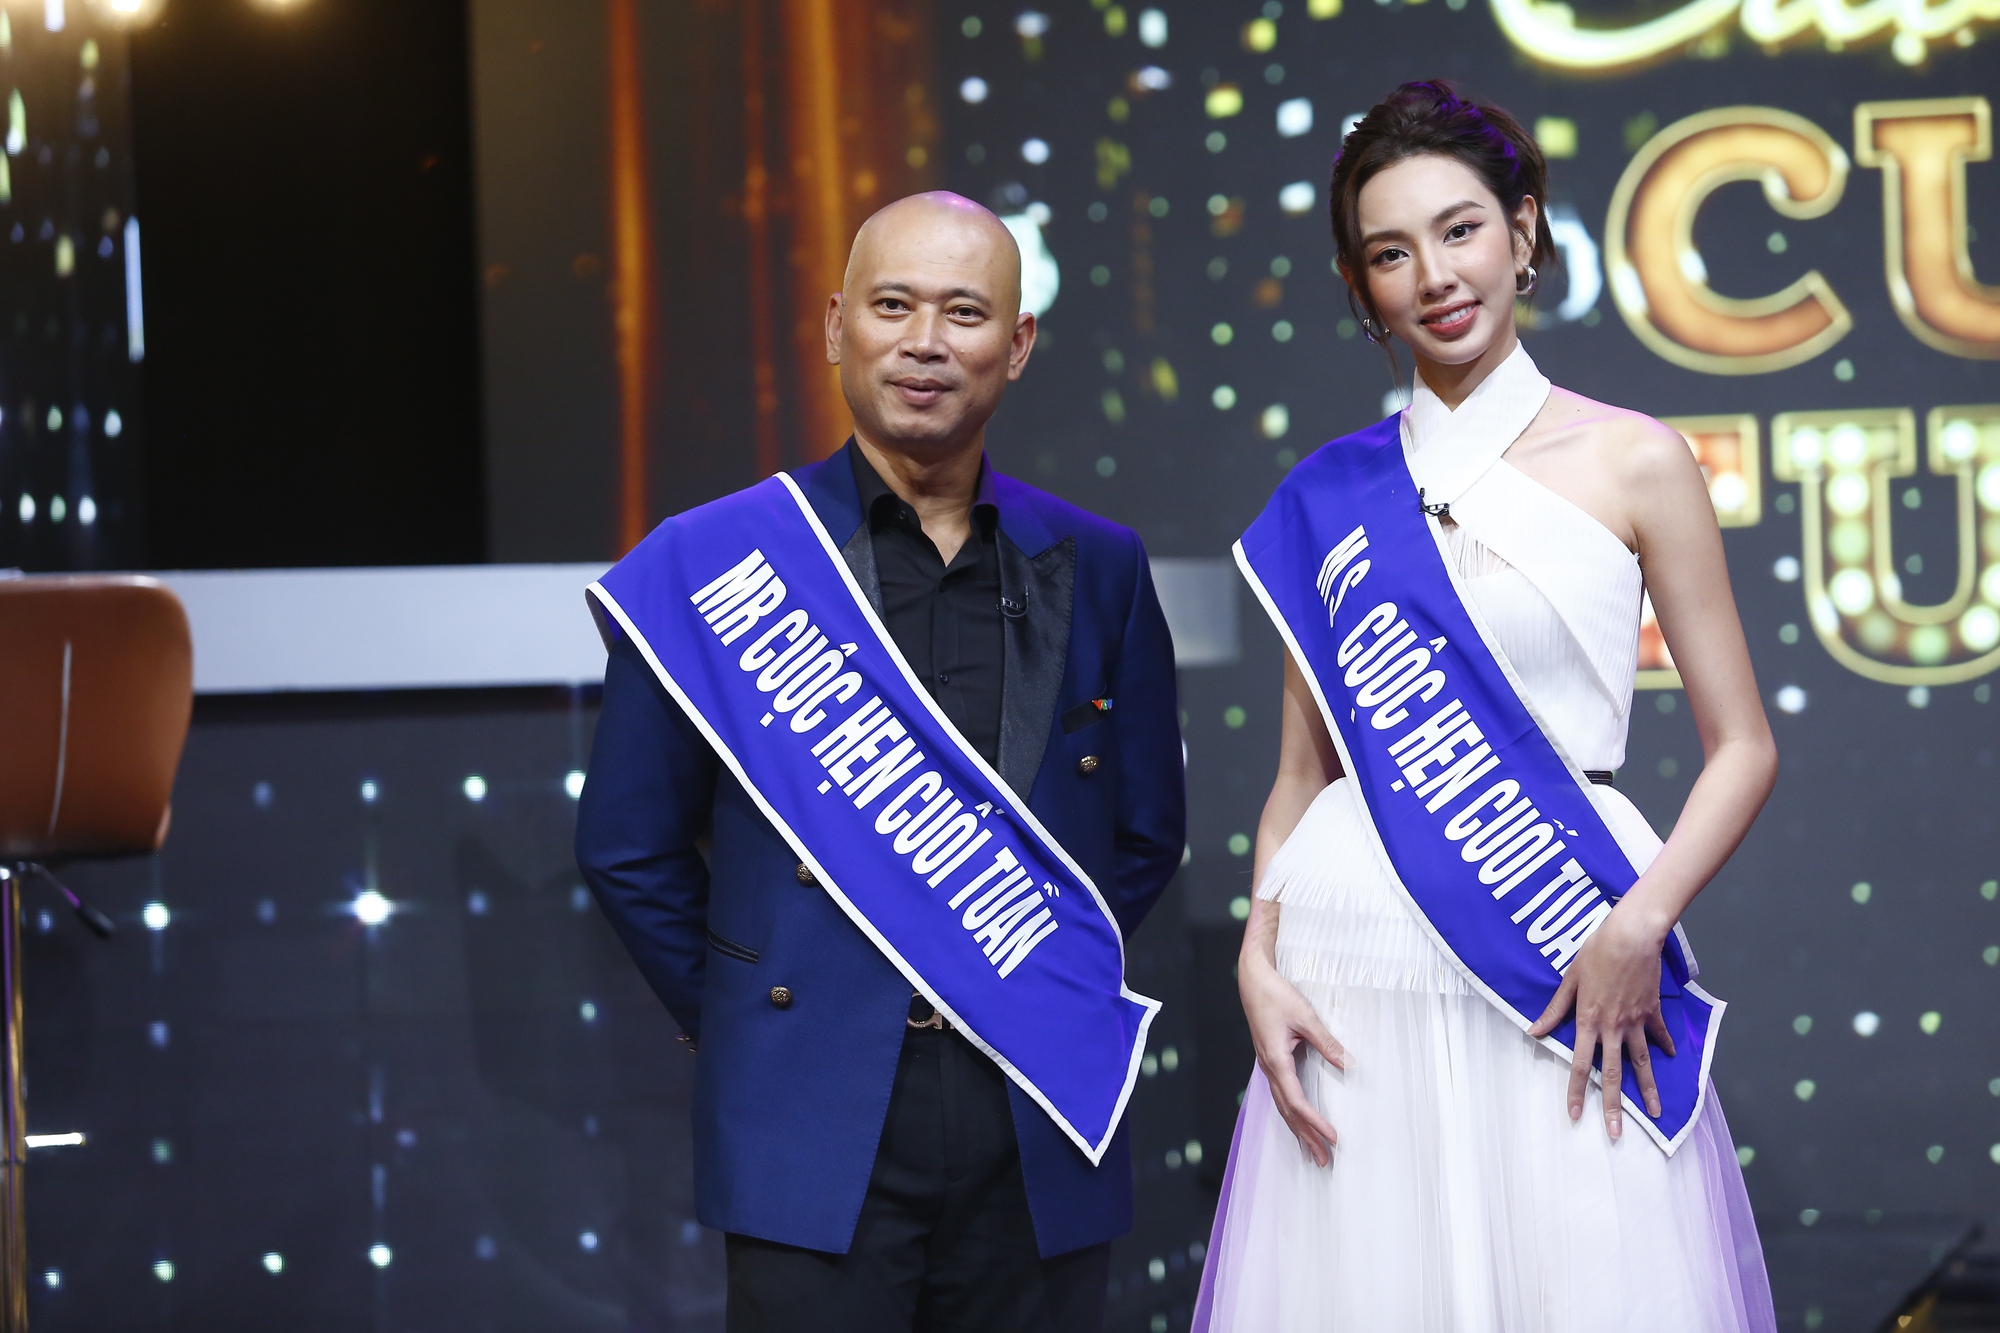 Hoa hậu Thùy Tiên trải lòng về sức nặng của vương miện - Ảnh 1.